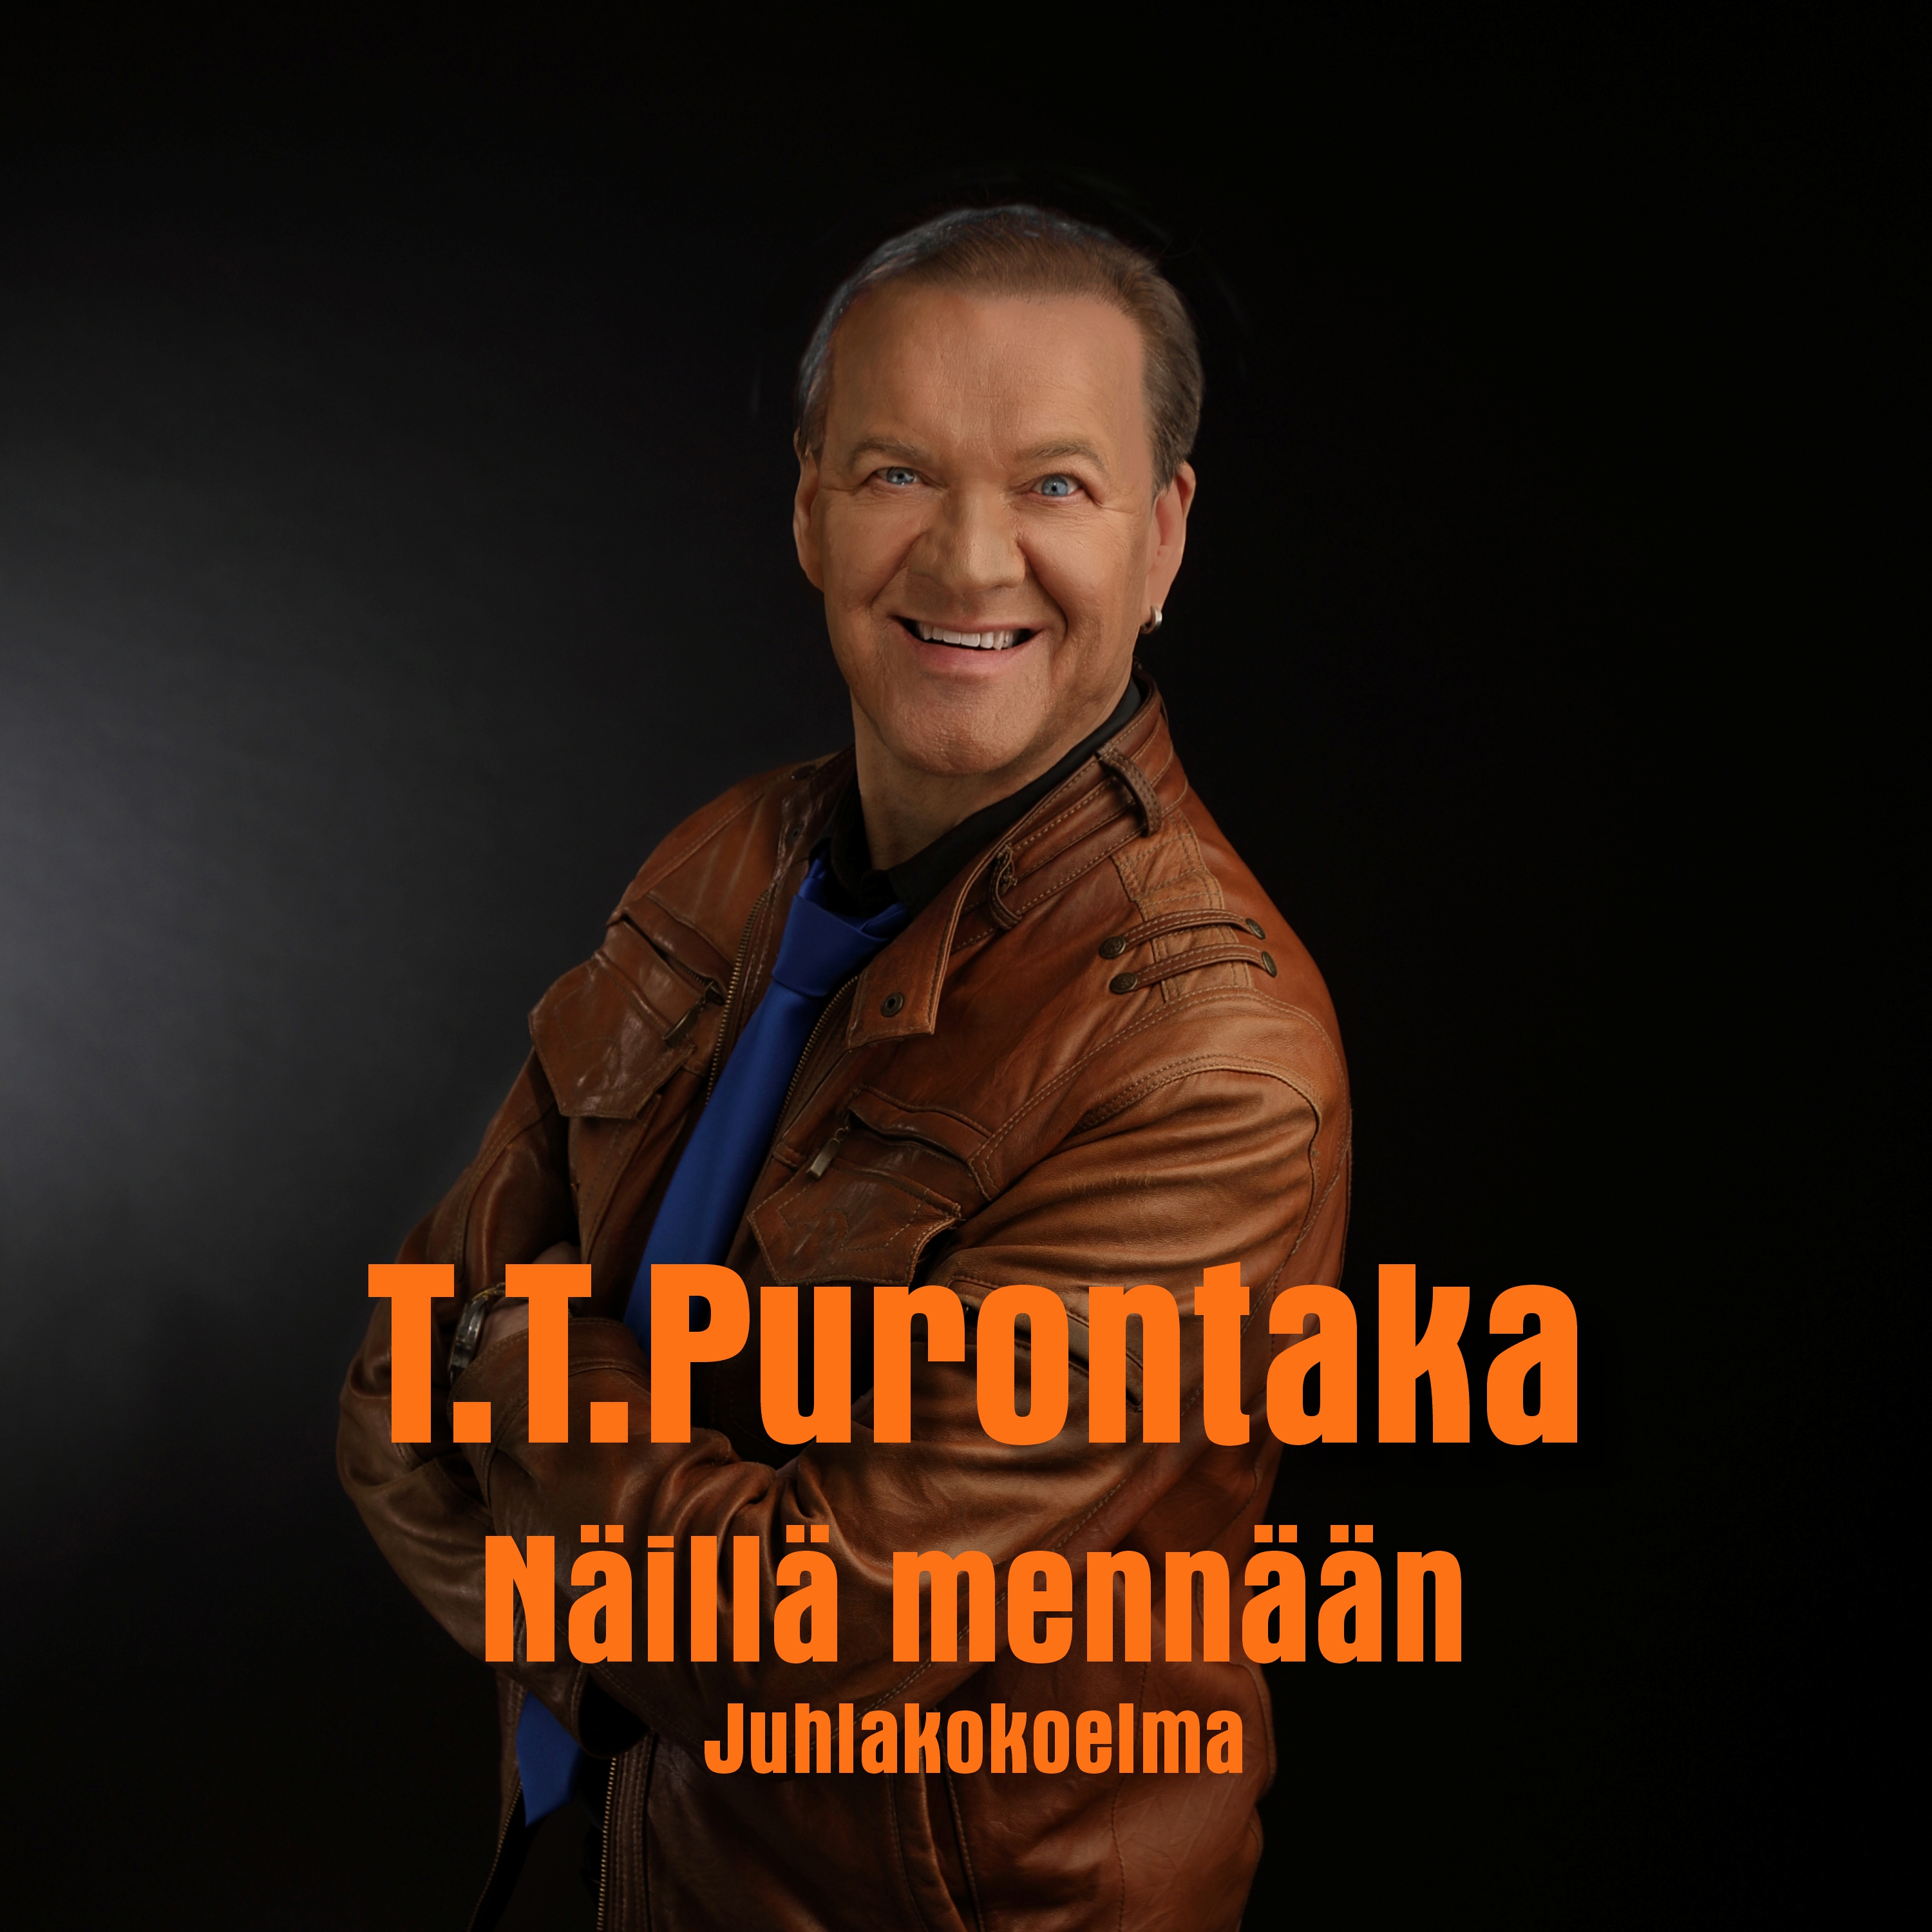 T.T. Purontaka - N ill  menn  n - 2xCD+DVD